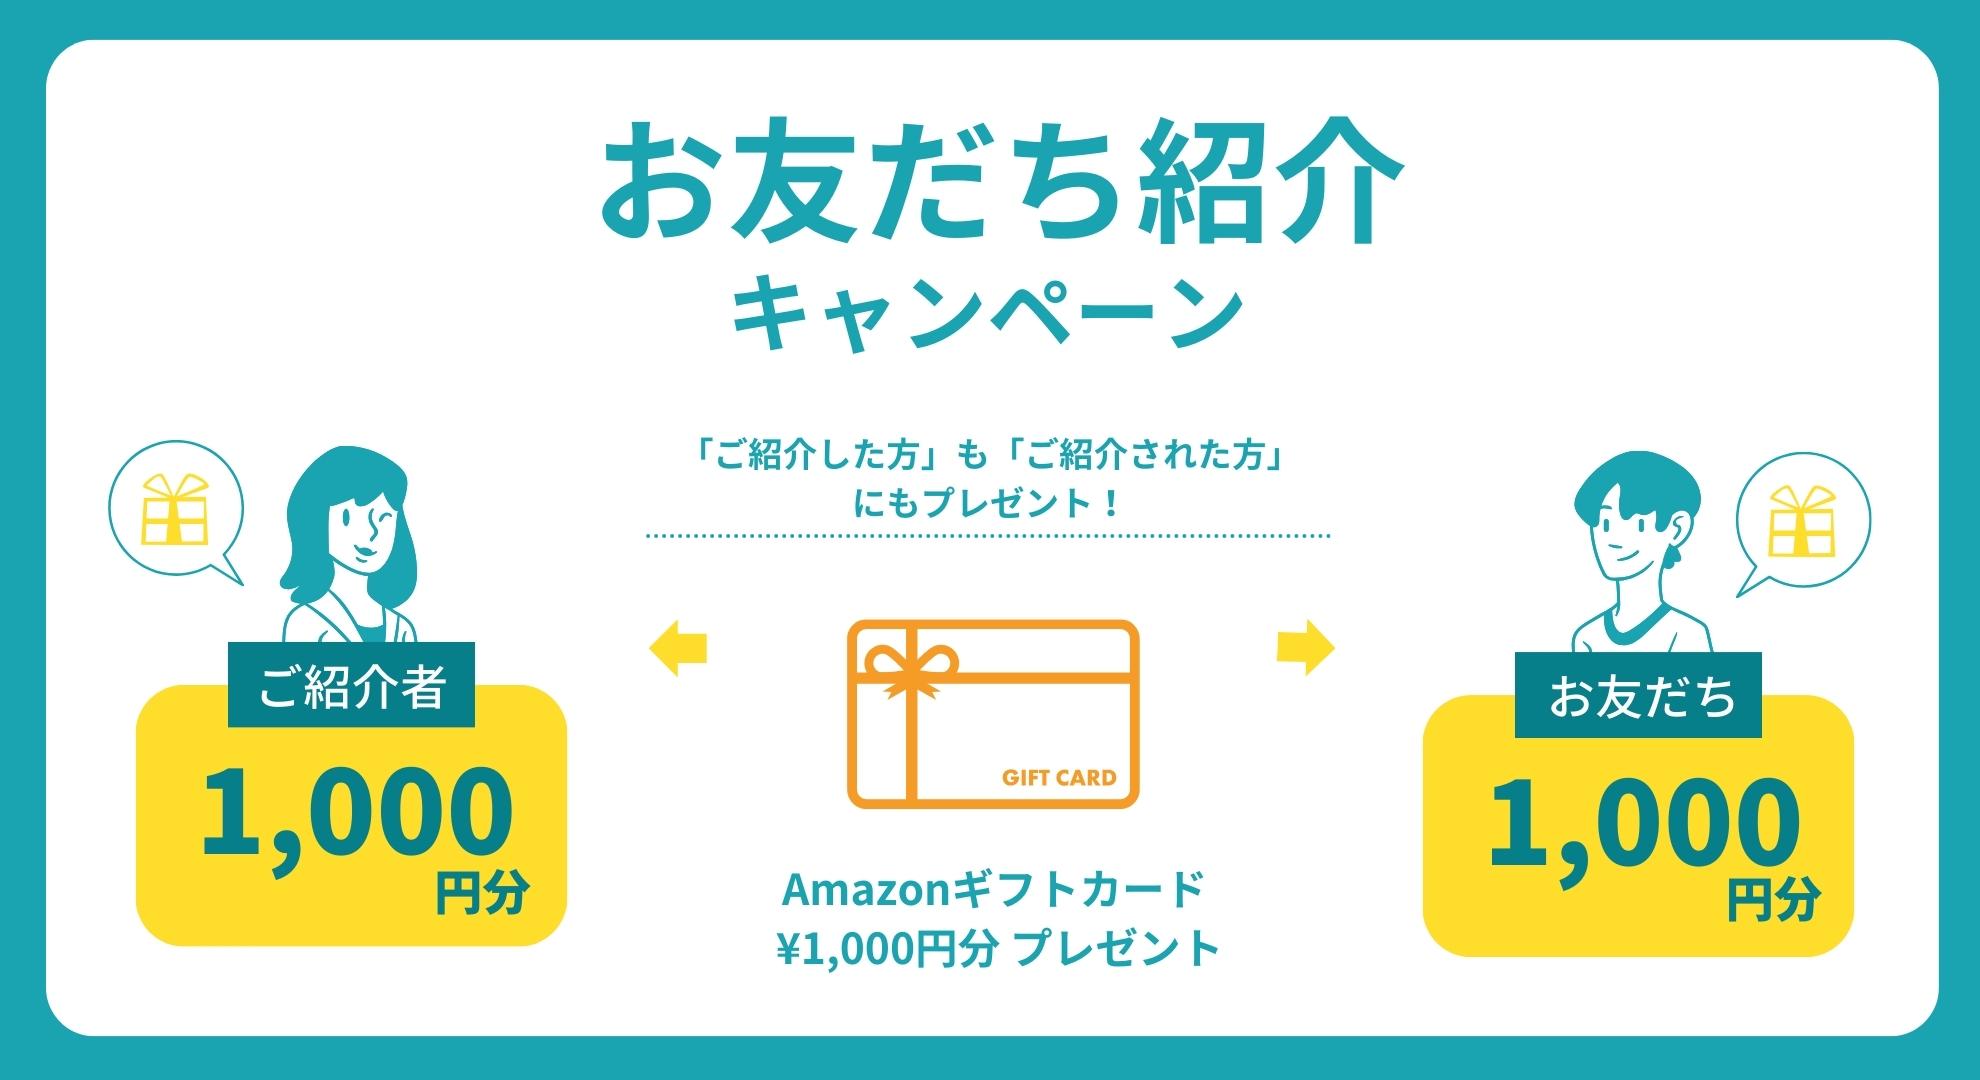 お友達紹介キャンペーン,紹介した人もされた人もAmazonギフトカード1,000円分プレゼント,お得なキャンペーン